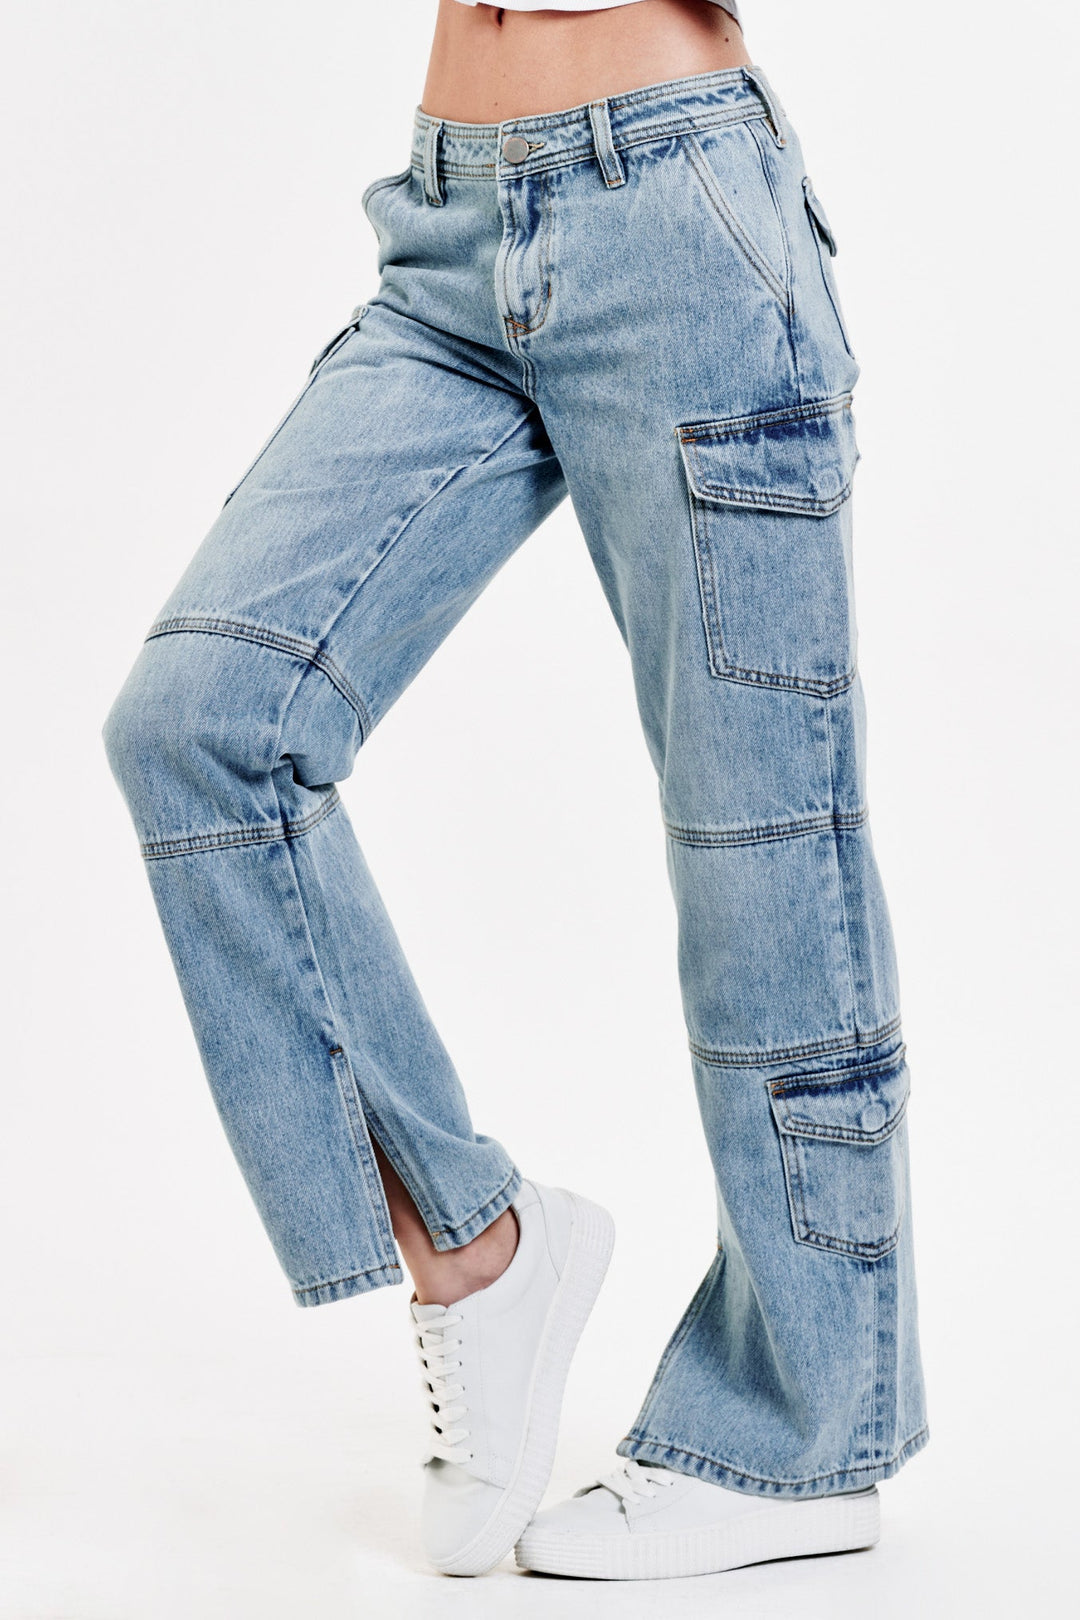 Shop Women's Denim Mid-Rise at Hudson Jeans